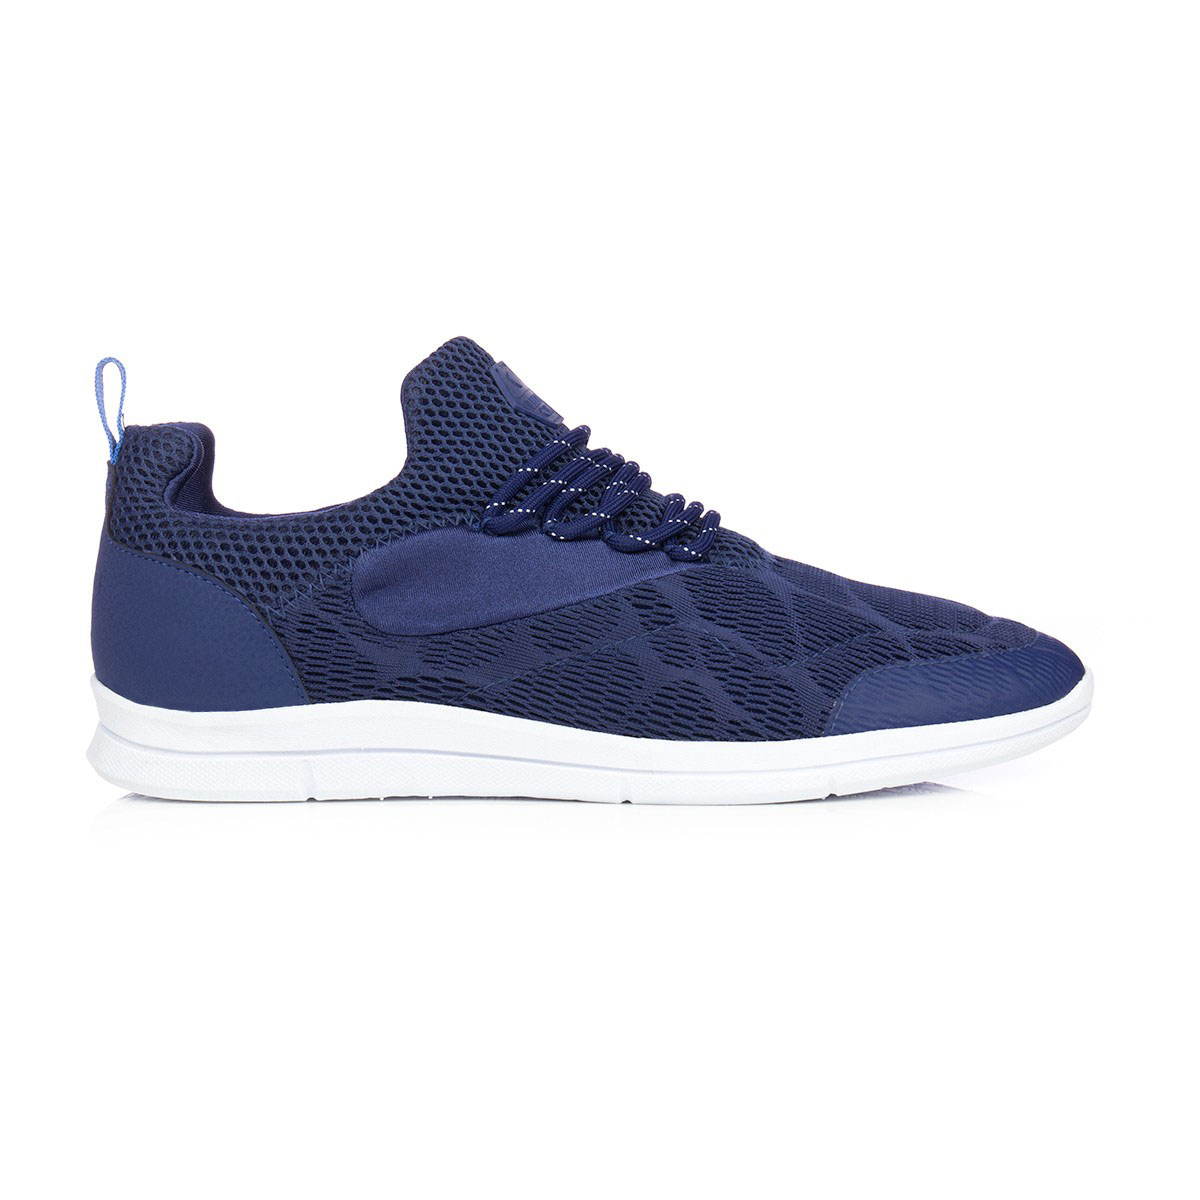 Cruyff Calzino Di Ibiza blue Мъжки спортни обувки CC6794172350